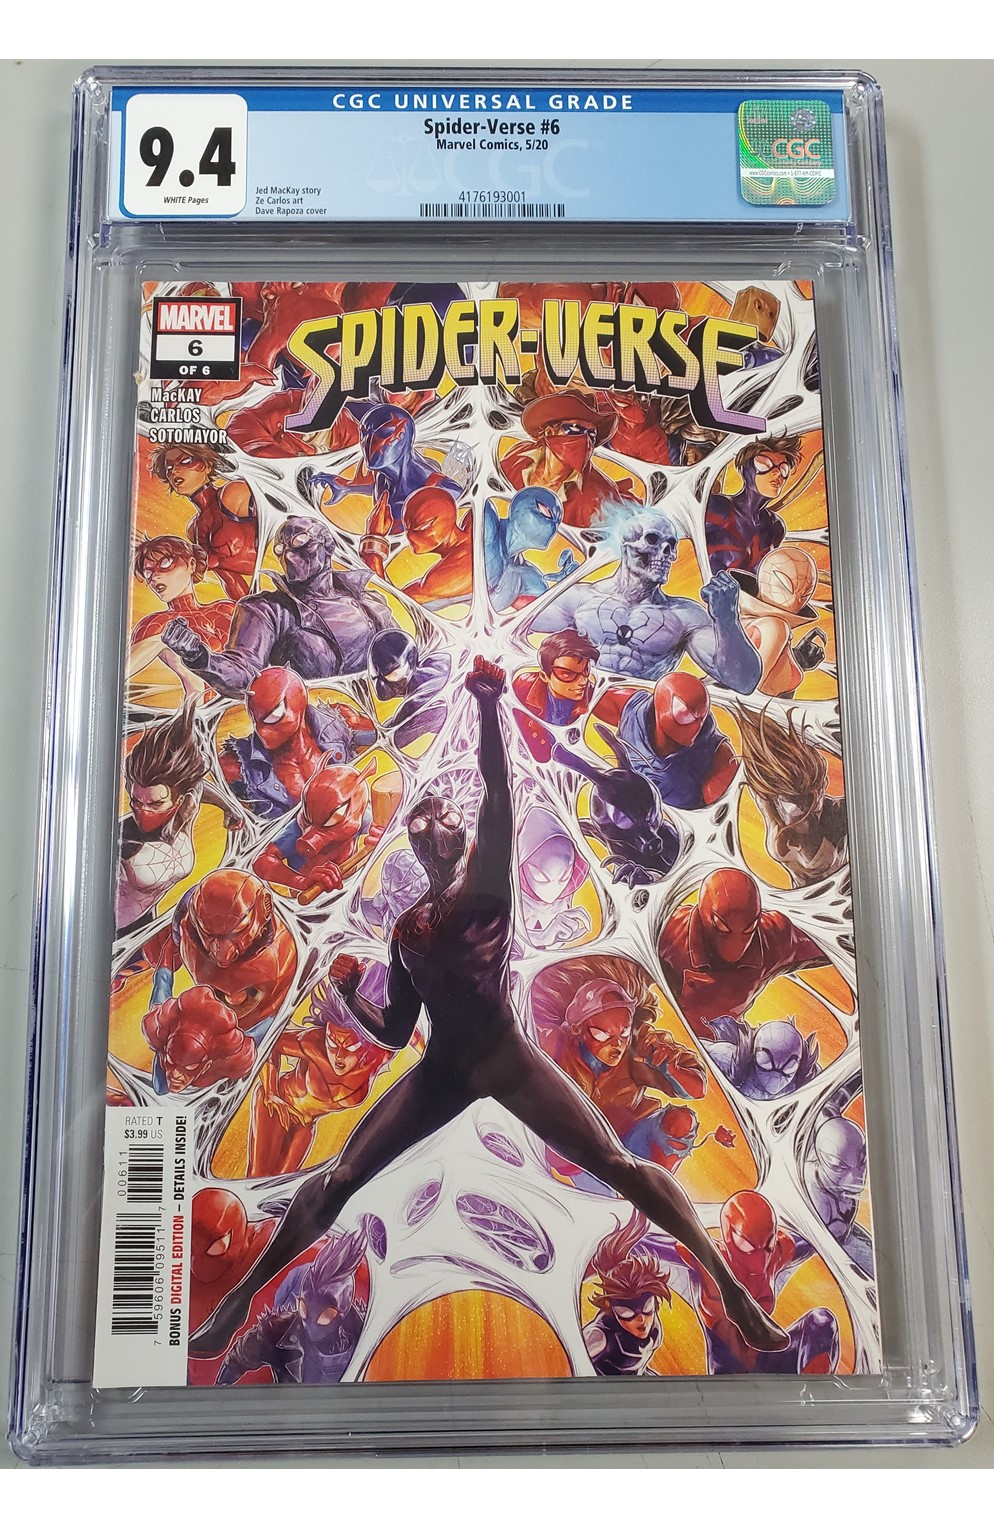 Spider-Verse #6 (Marvel 2020) Cgc 9.4